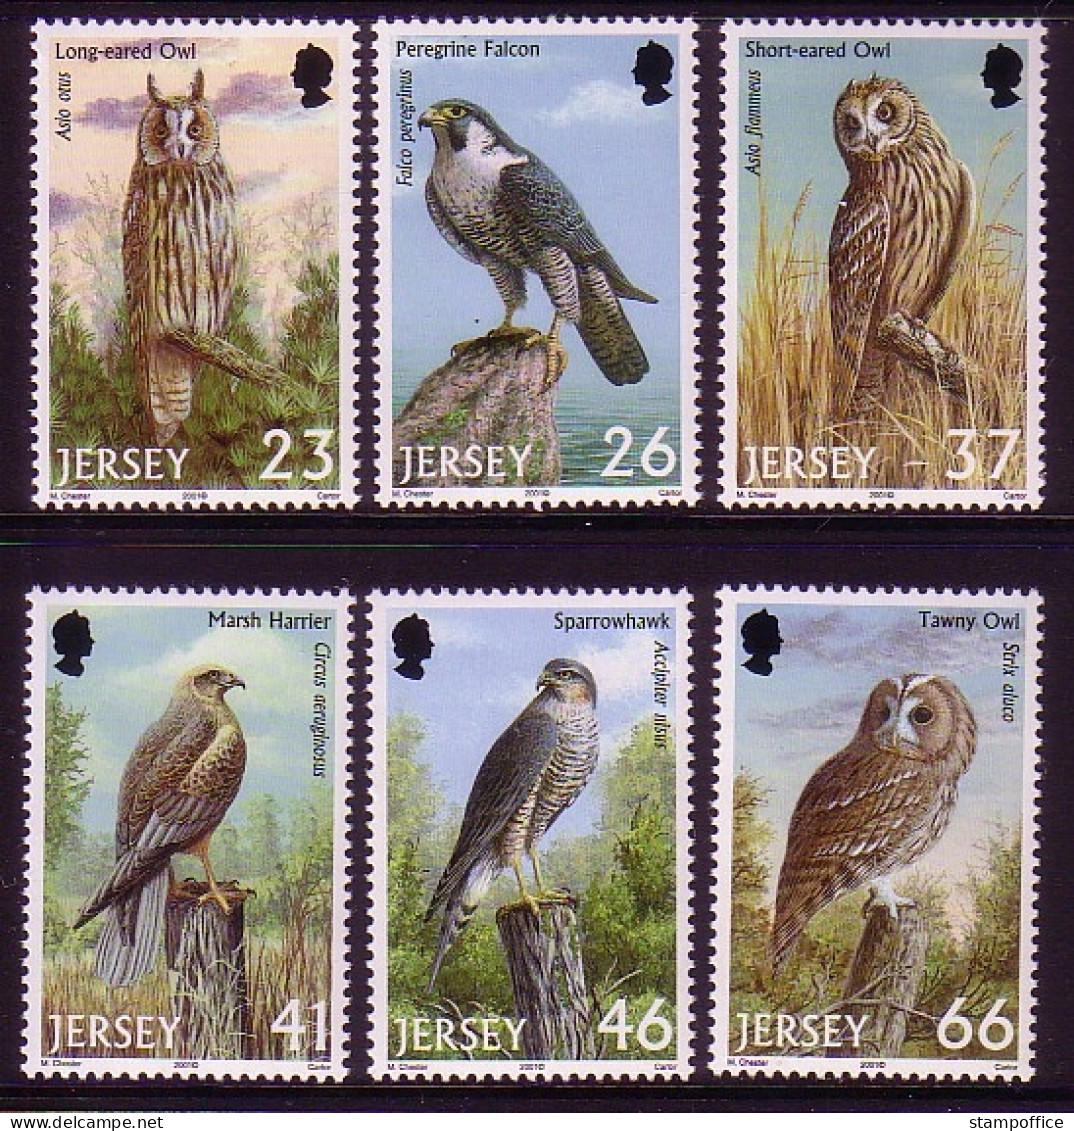 JERSEY MI-NR. 987-992 POSTFRISCH(MINT) RAUBVÖGEL EULEN FALKE SPERBER - Owls